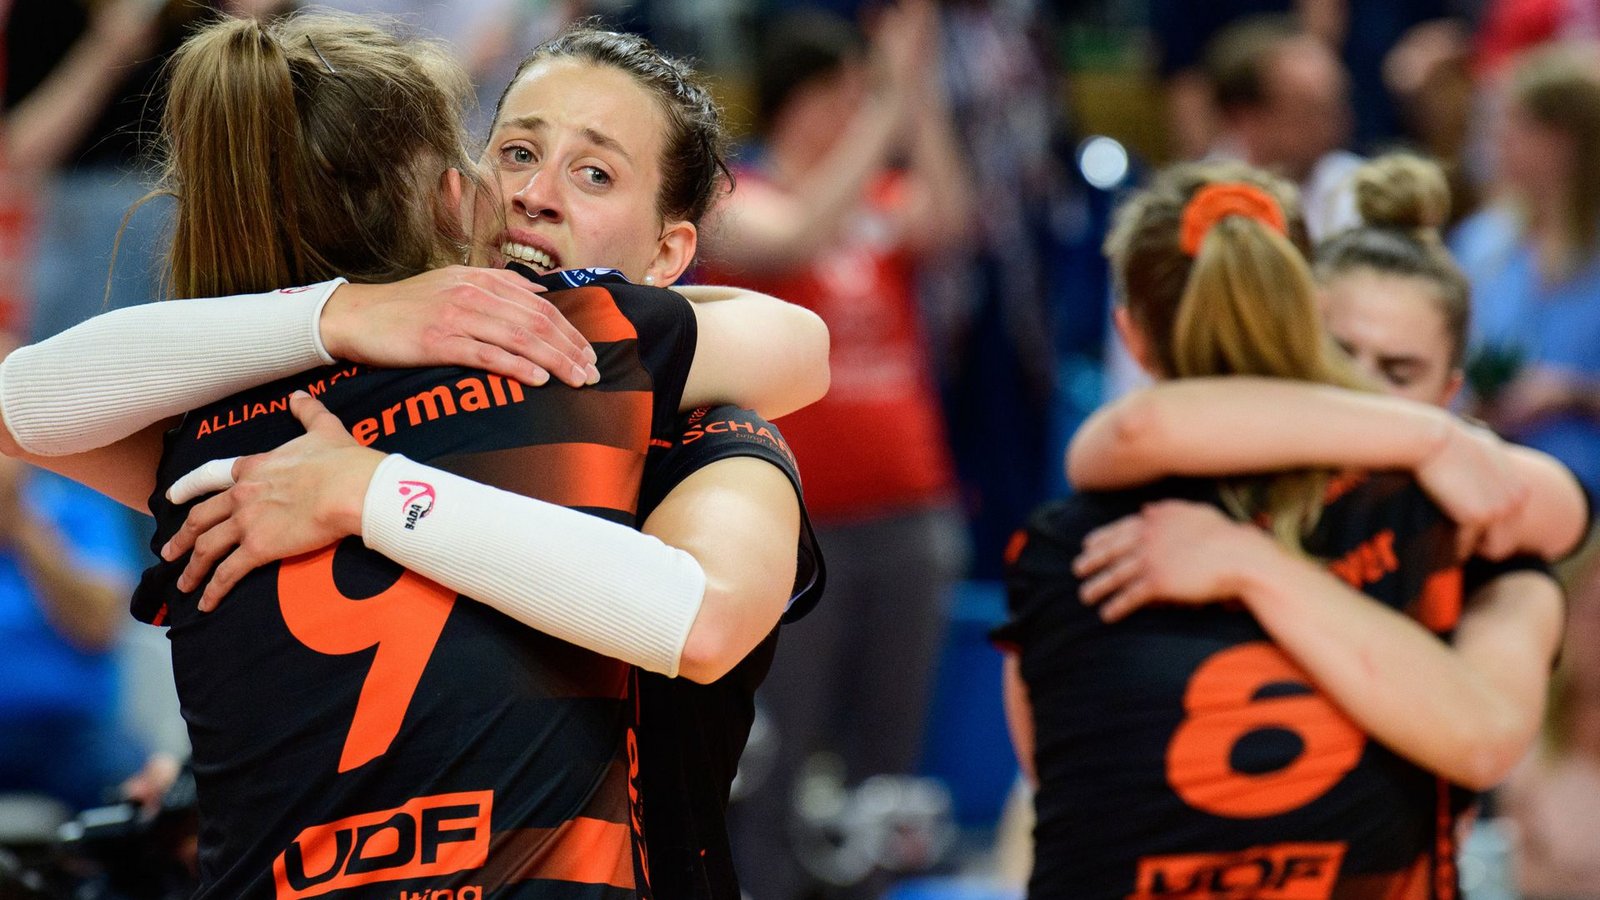 Erleichterung nach großer Anspannung: Stuttgarts Volleyballerinnen freuen sich über den Sieg in Potsdam.Foto: dpa/Soeren Stache